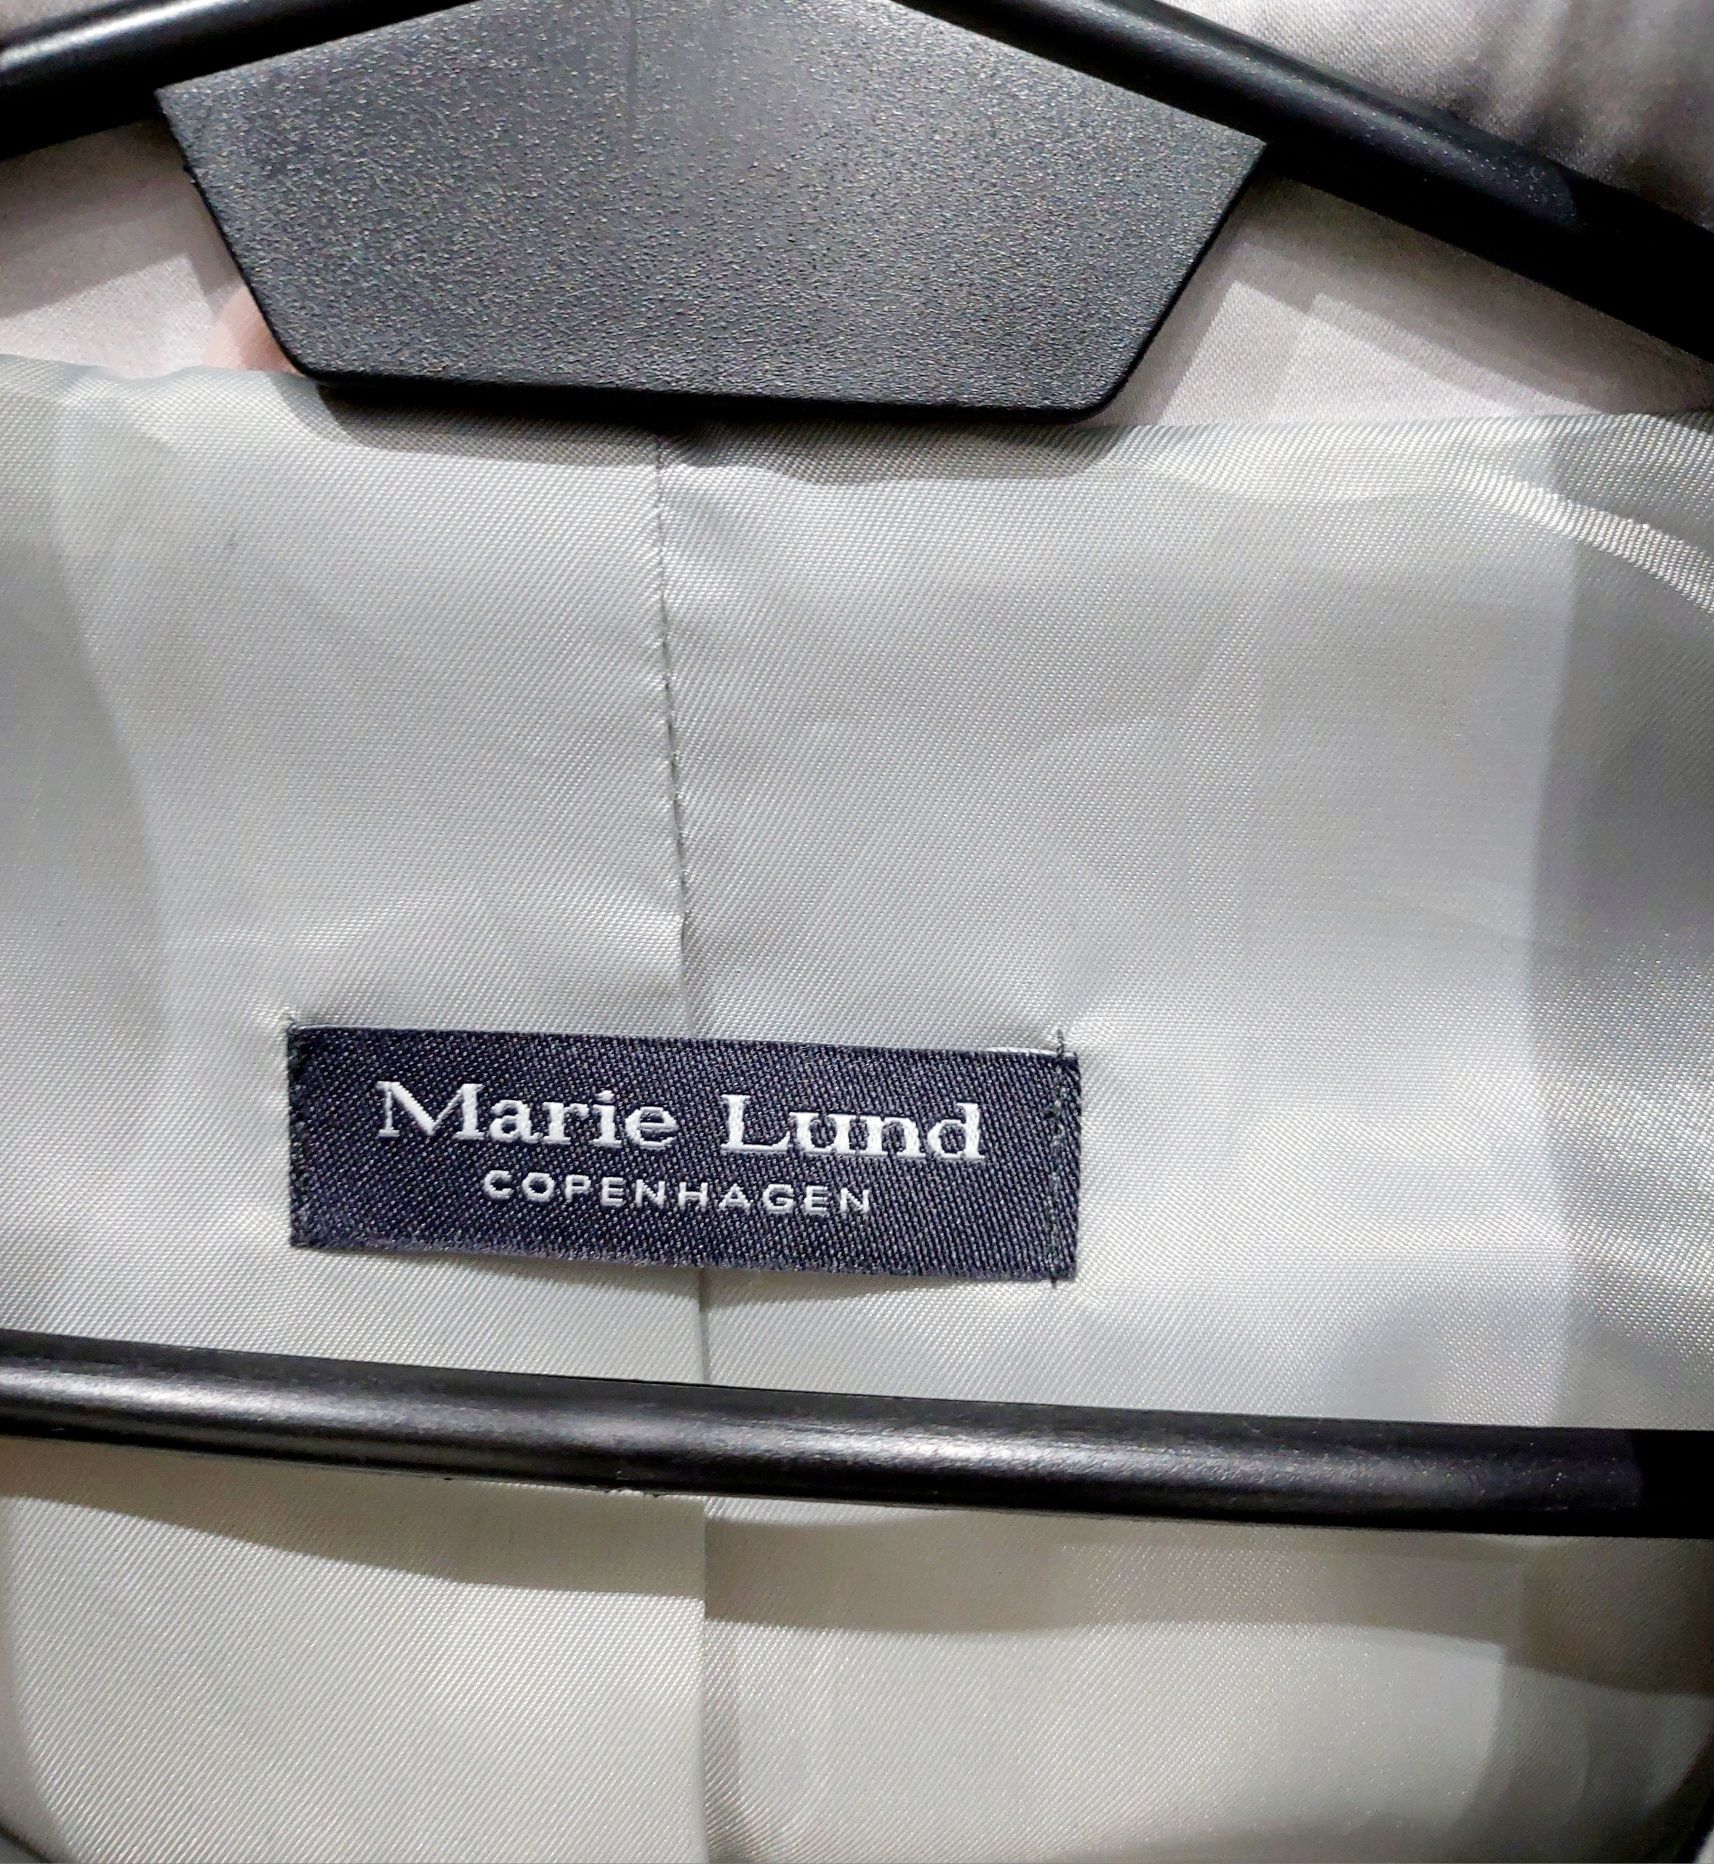 Nowy płaszcz, trencz  Marie Lund  roz. S/M ekskluzywny.  Okazja